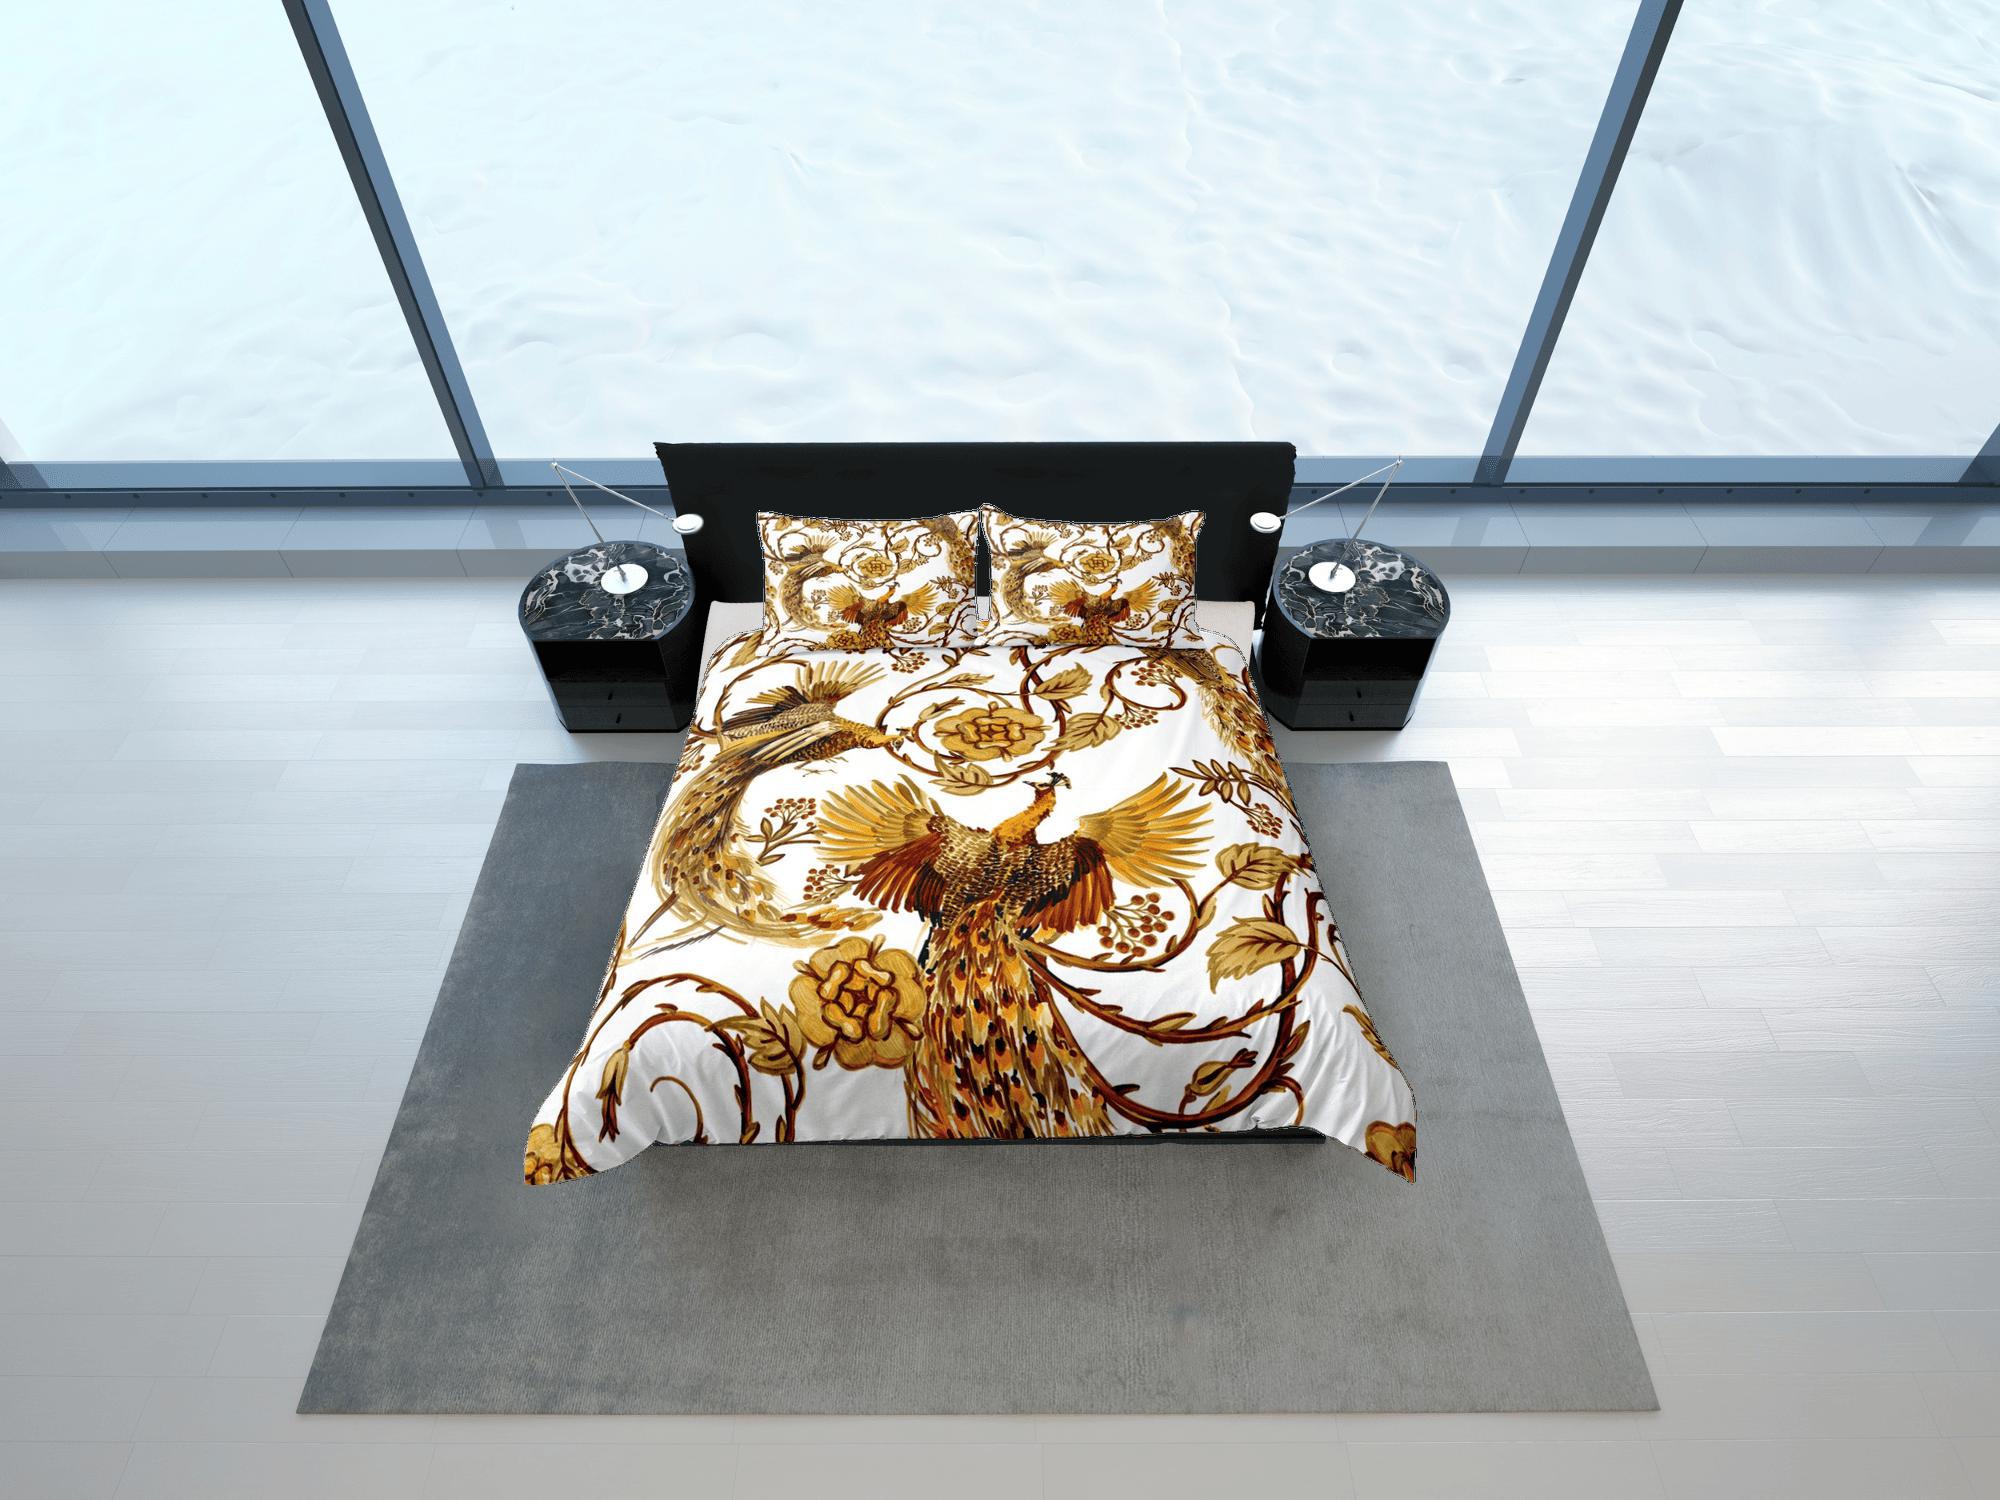 daintyduvet Baroque Golden Bird Luxury Duvet Cover Set Aesthetic Bedding Set Full Victorian Decor